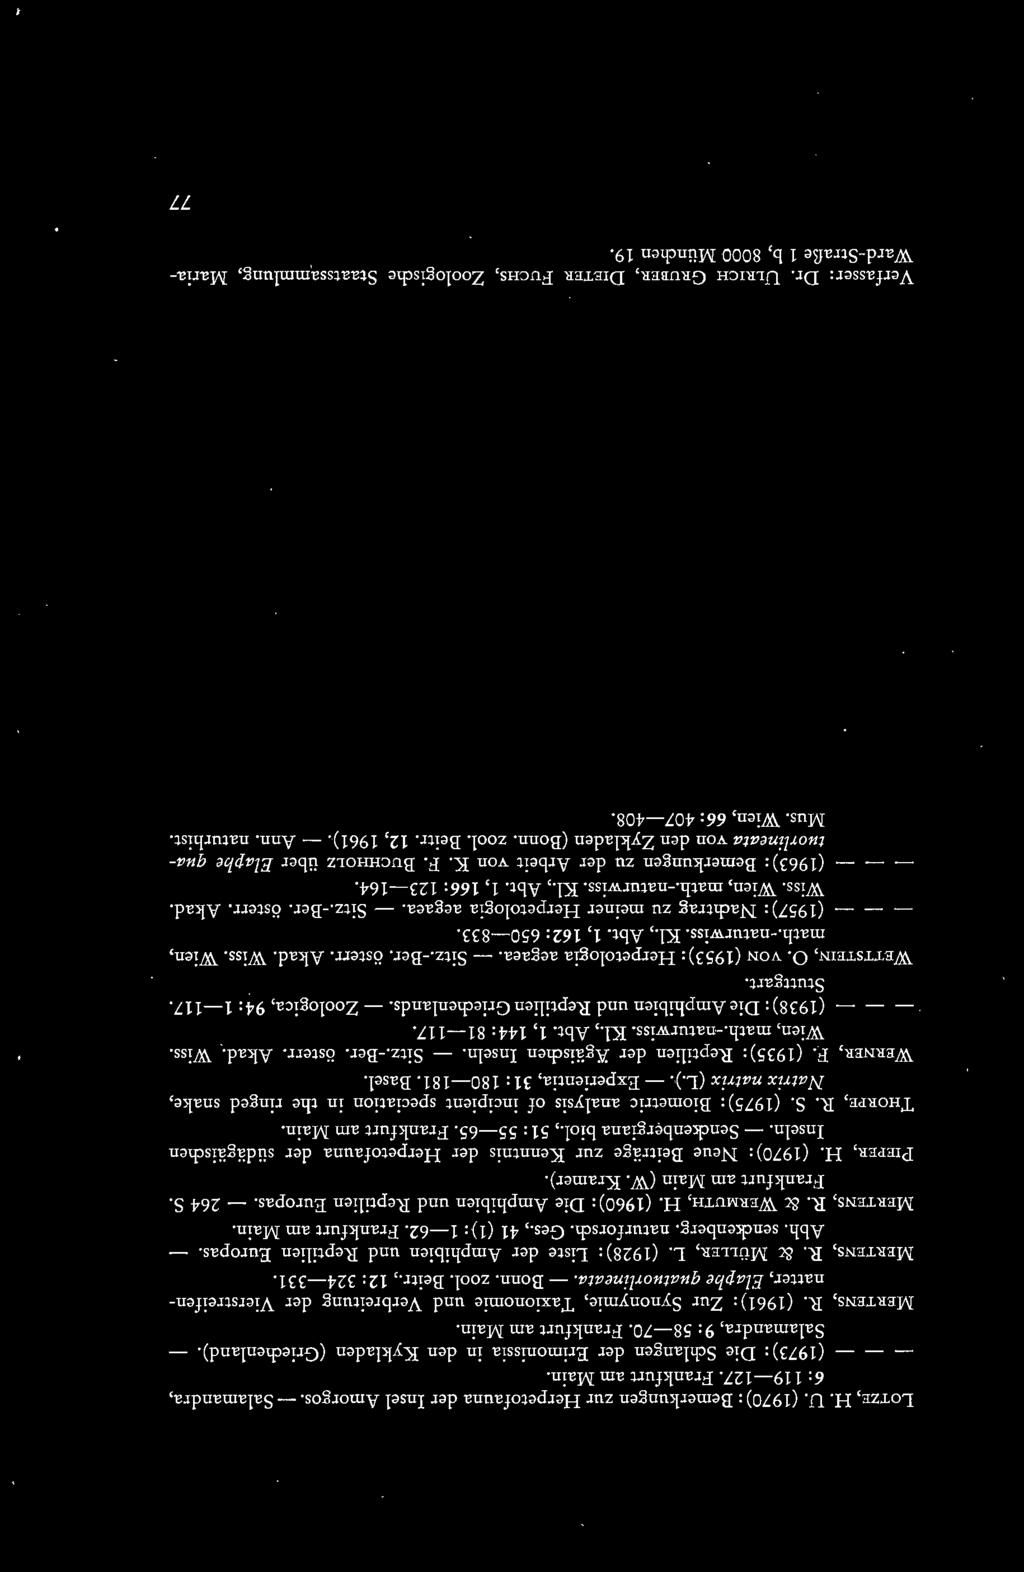 ). - Experientia, 31: 180-181. Basel. WERNER, F.. (1935): Reptilien der Kgäischen Inseln. - Sitz.-Ber. österr. Akad. Wiss. Wien, math.-naturwiss. Kl., Abt. 1,144: 81-117.